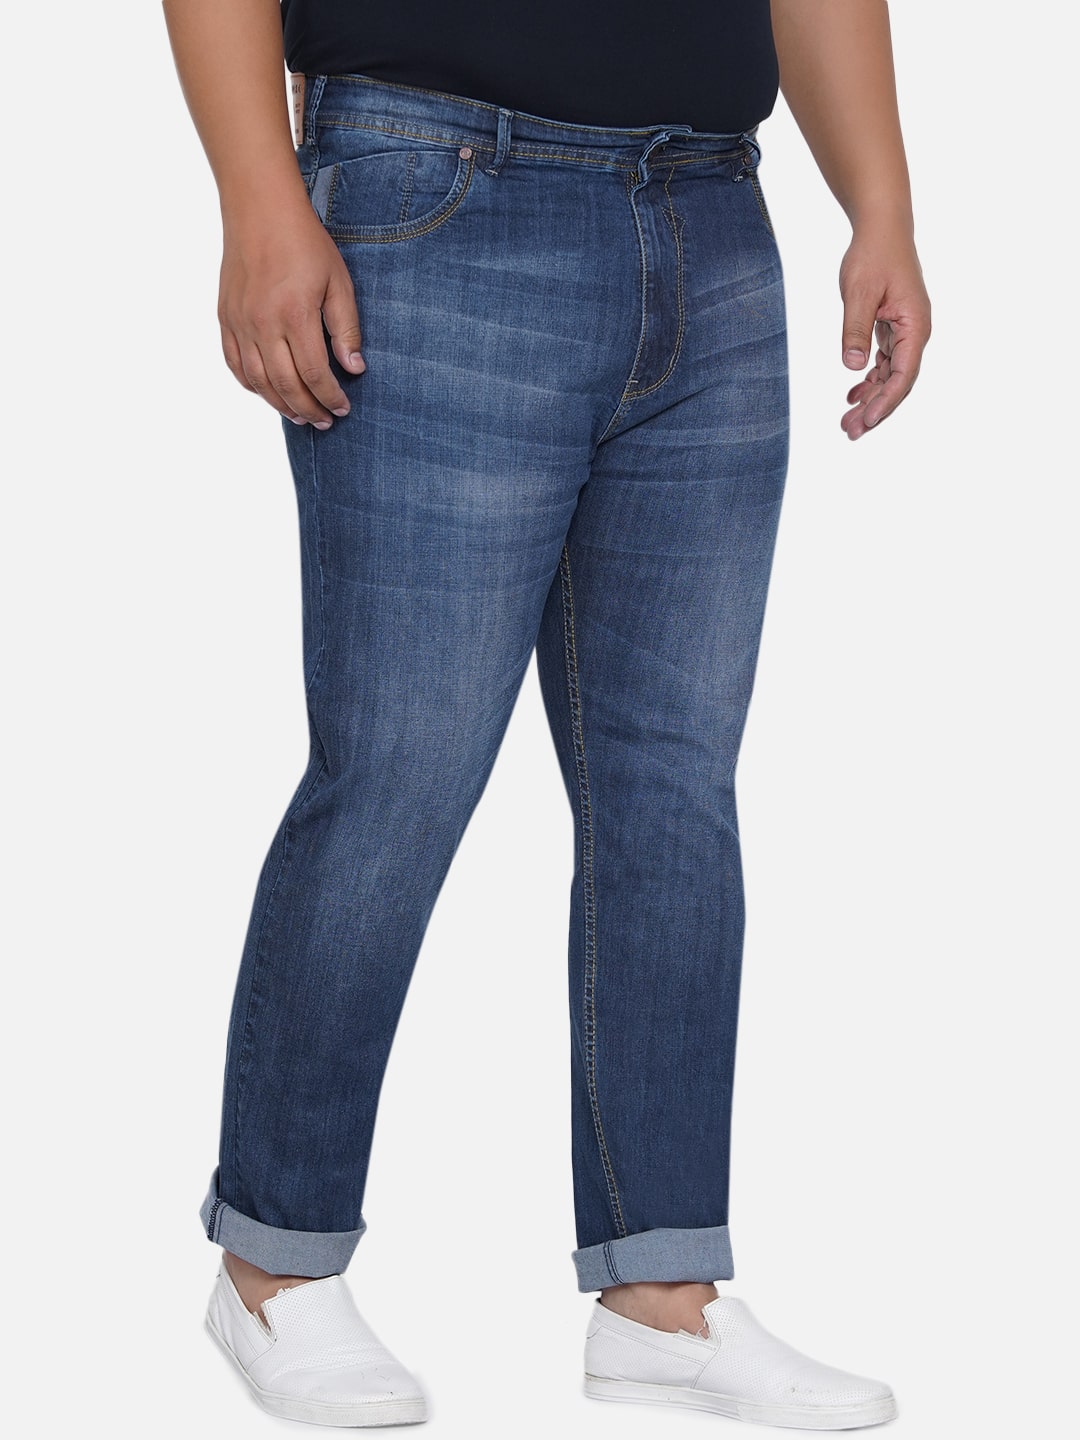 affordables/jeans/EJPJ25013/ejpj25013-5.jpg